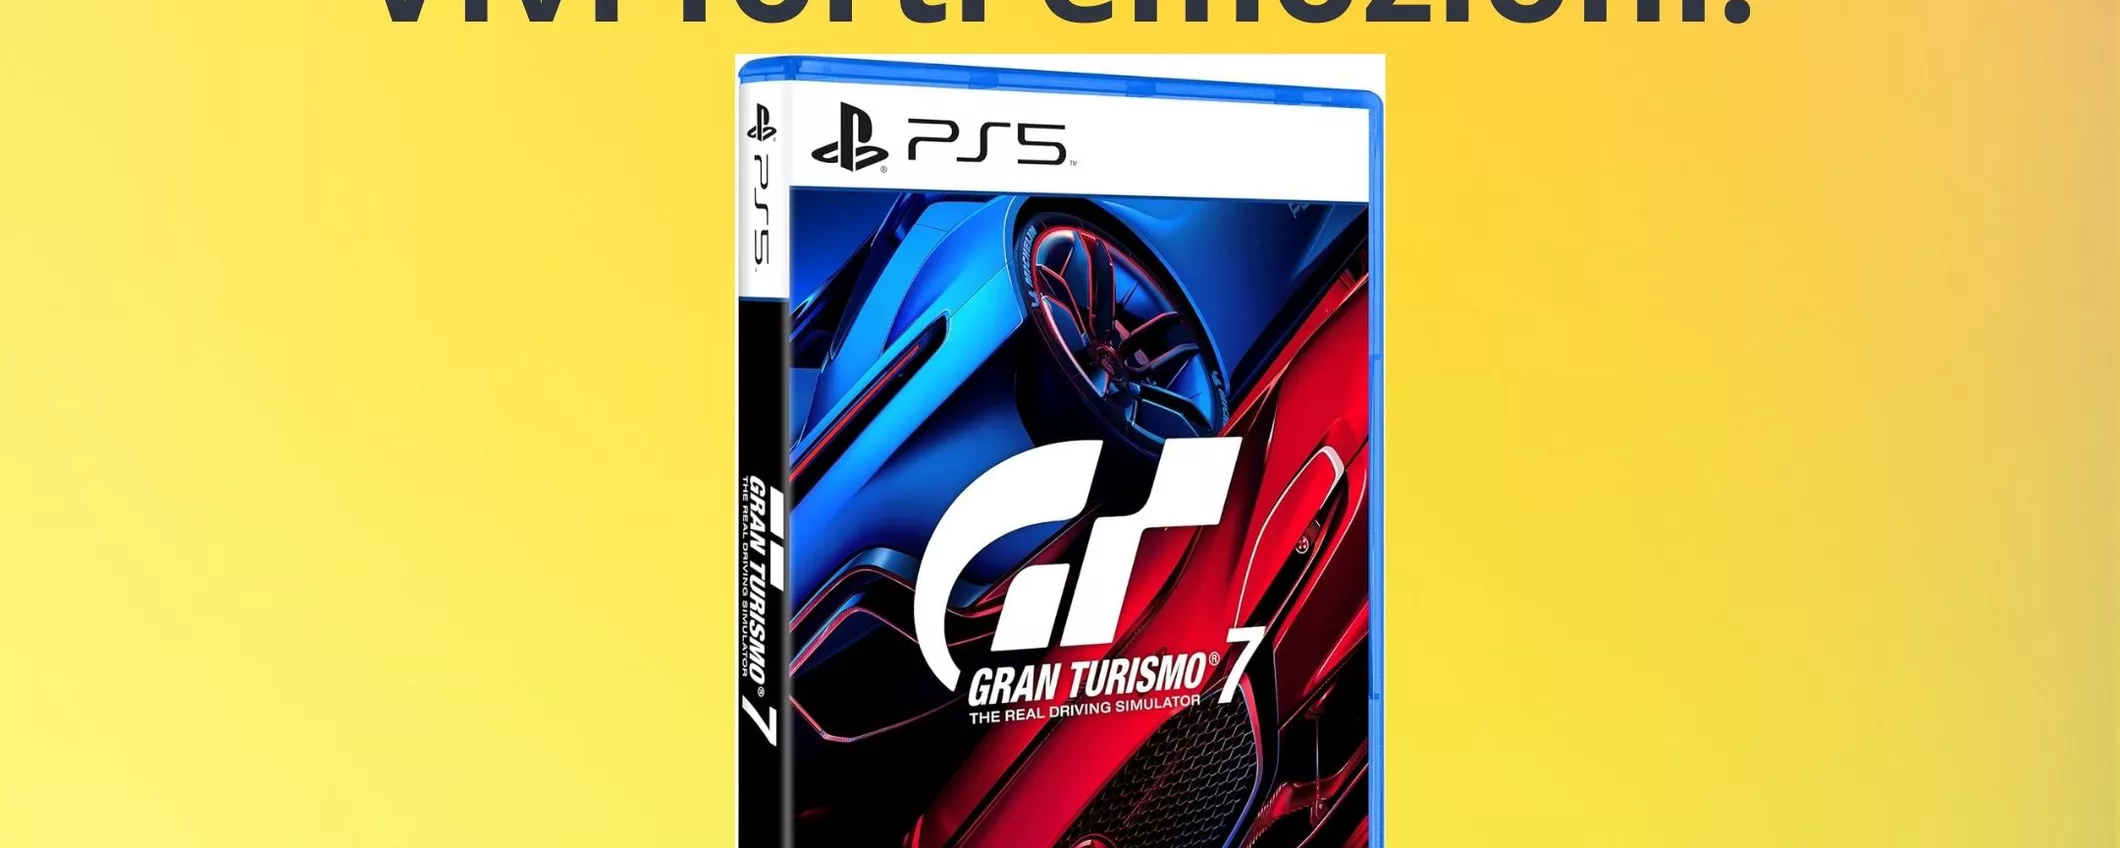 Gran Turismo 7 per PS5: il prezzo è crollato, corri ad acquistarlo!